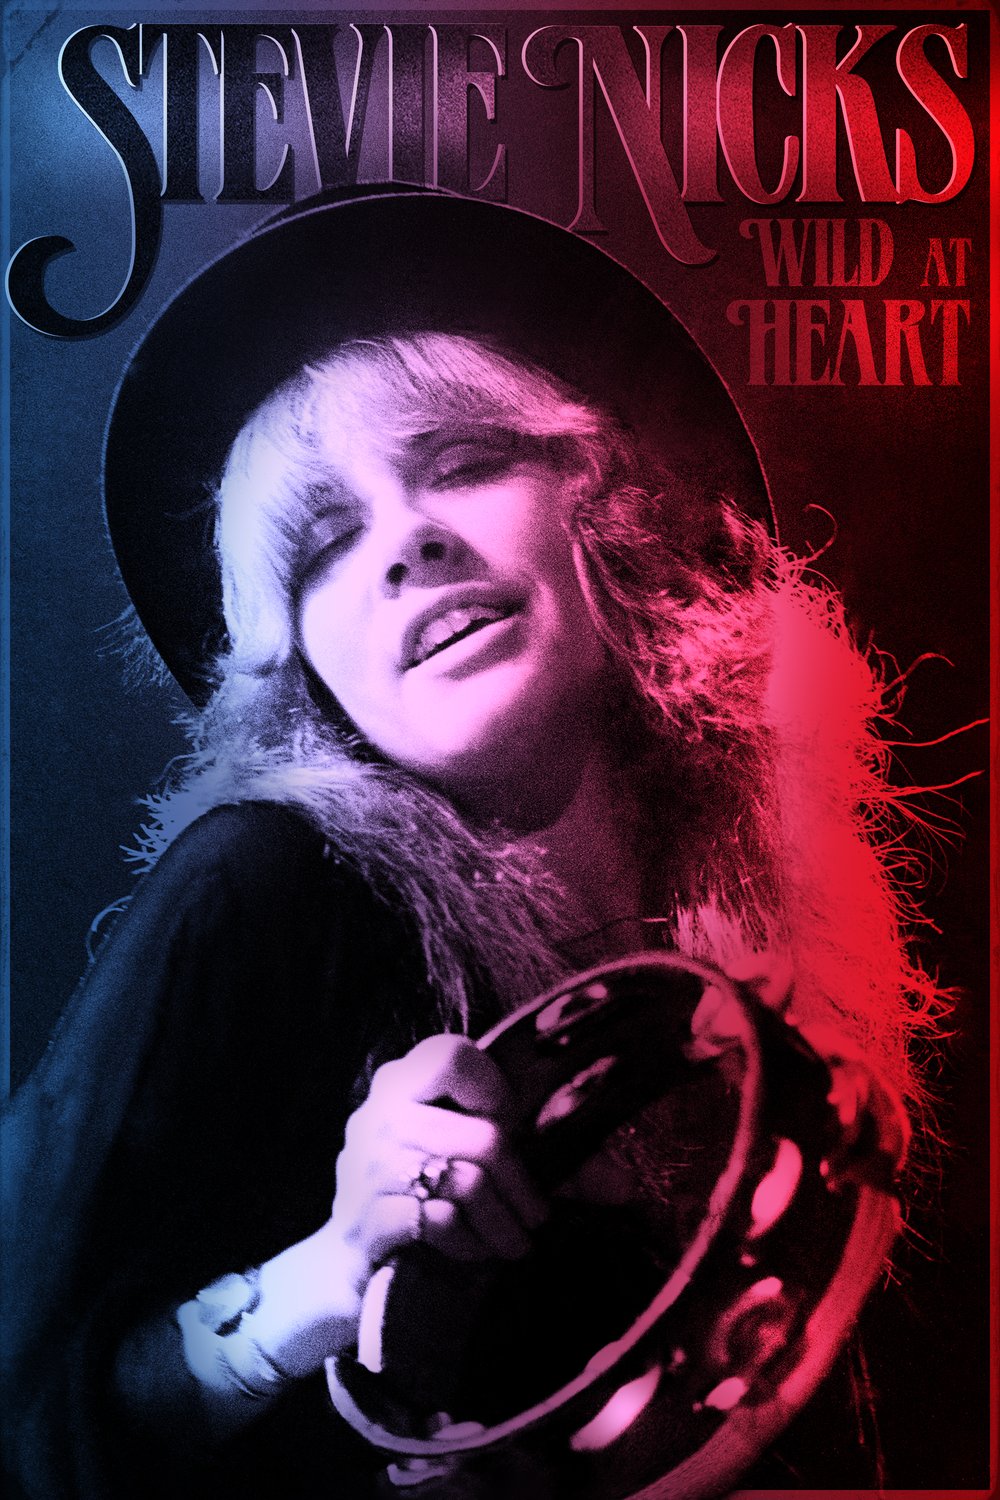 L'affiche du film Stevie Nicks: Wild at Heart